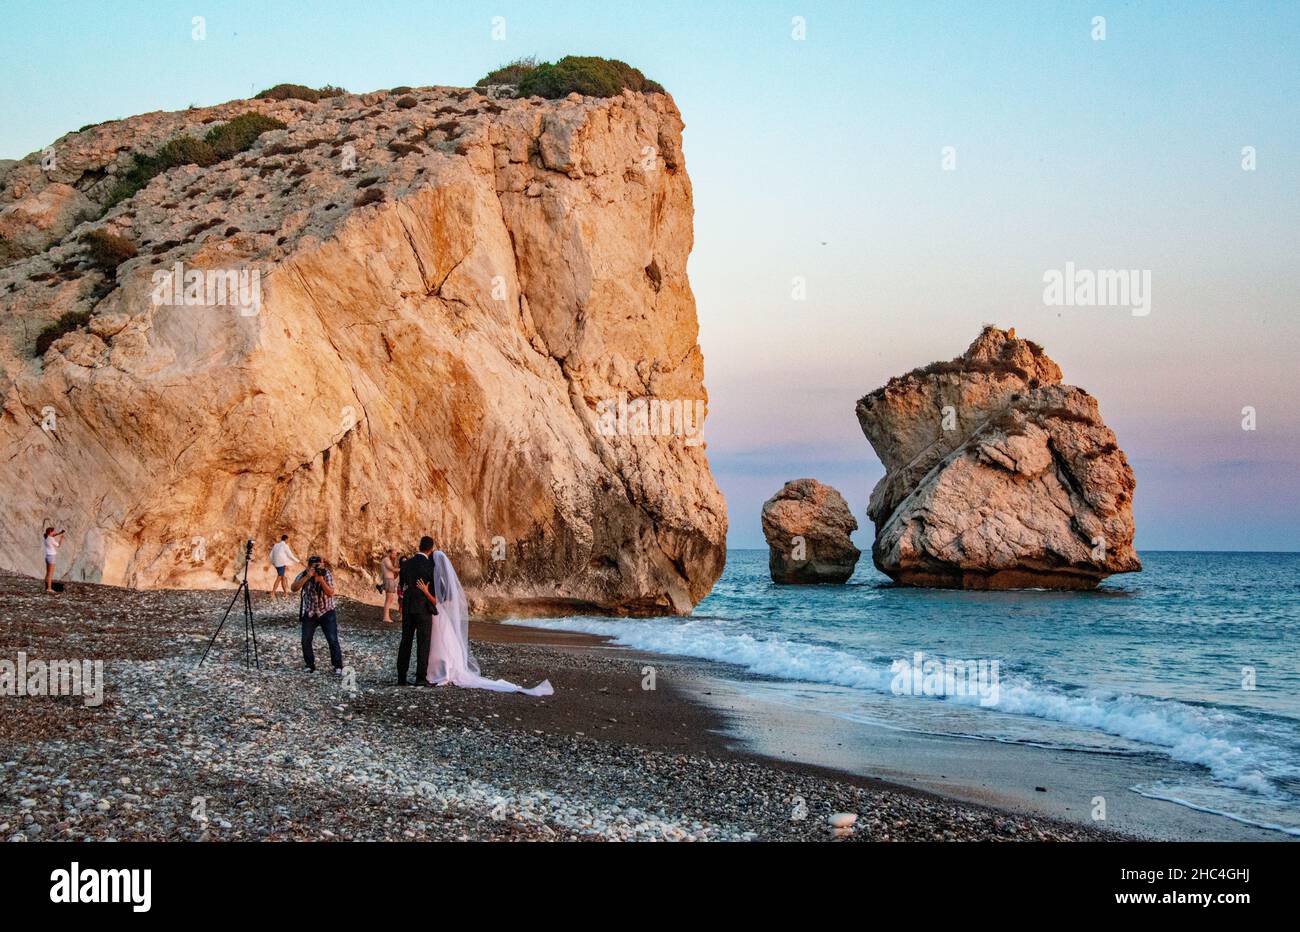 Wedding photography at Petra tou Romiou beach, Cyprus Stock Photo